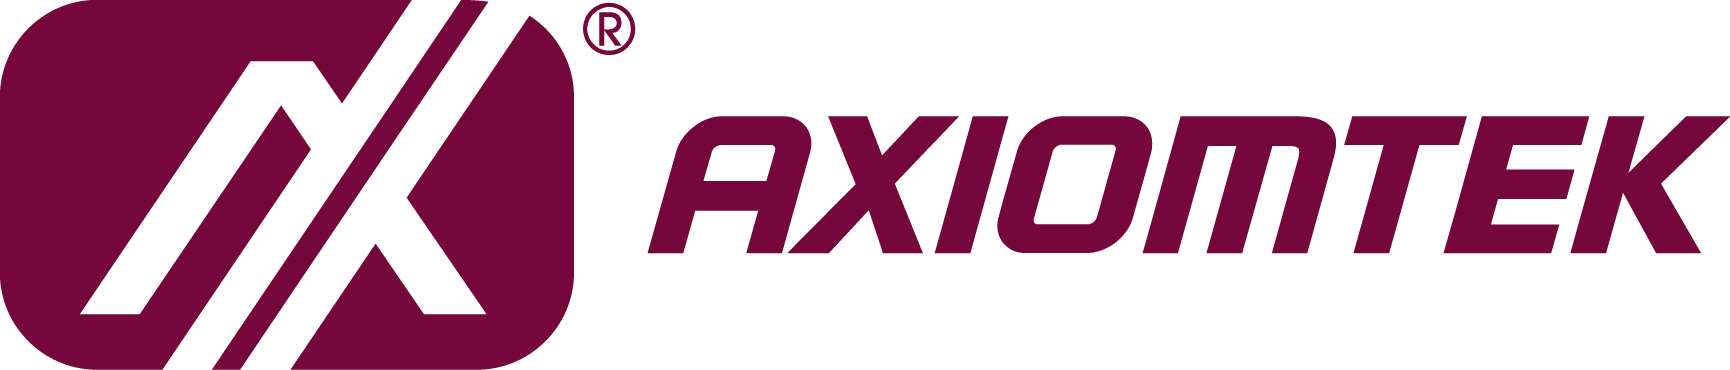 WYSIWYG - Axiomtek_logo.jpg